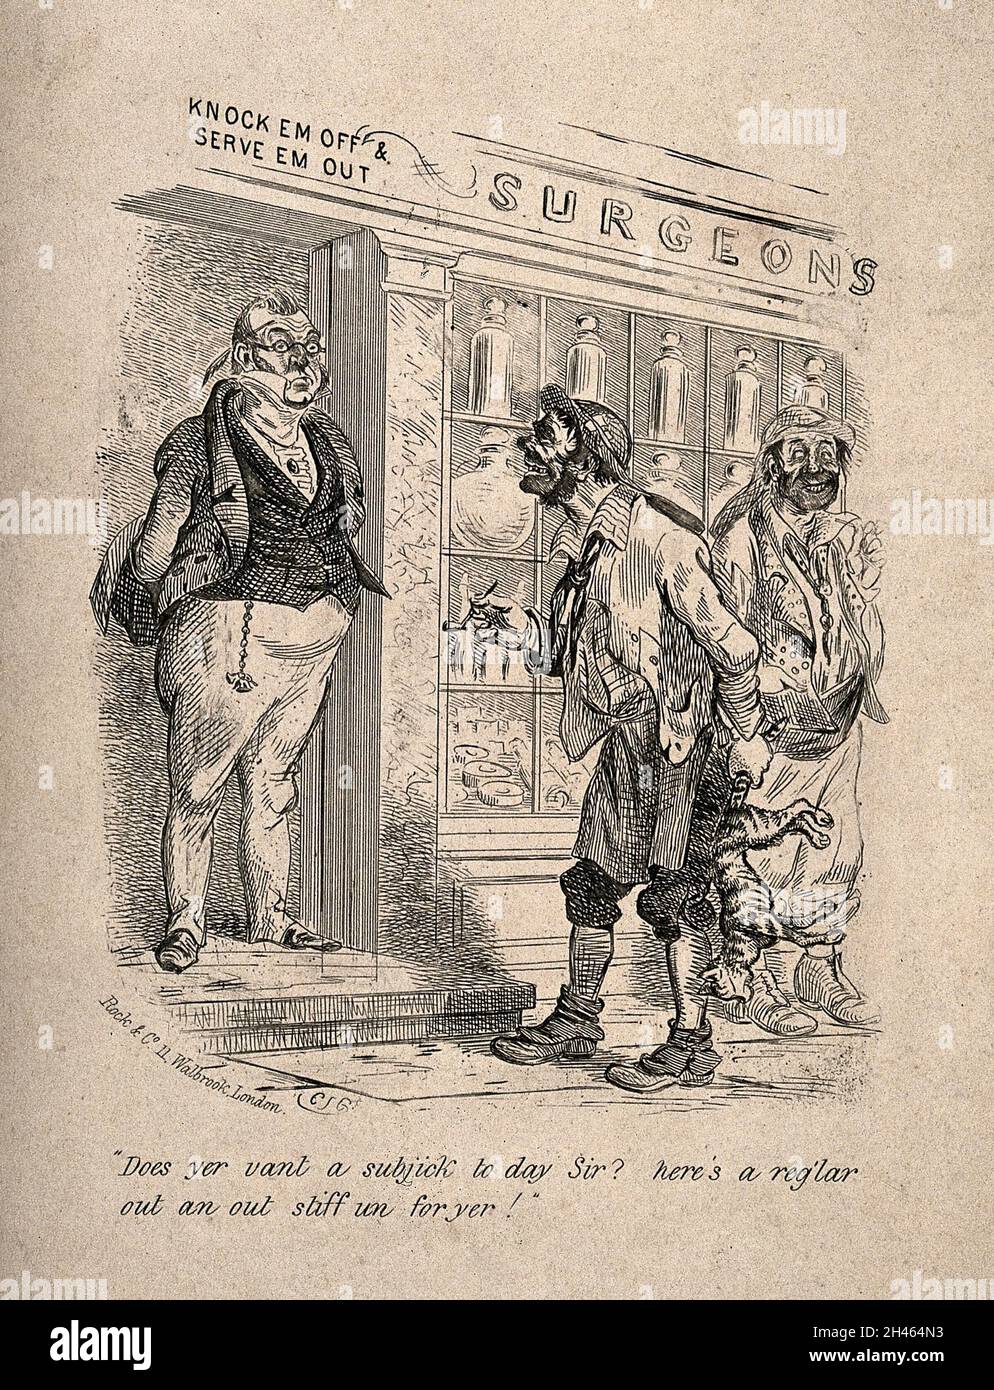 Ein gnadenvoller Chirurg, der vor seinem Geschäft steht, nähert sich ihm zwei Tramps mit einer toten Katze. Radierung von C.S.G. Stockfoto